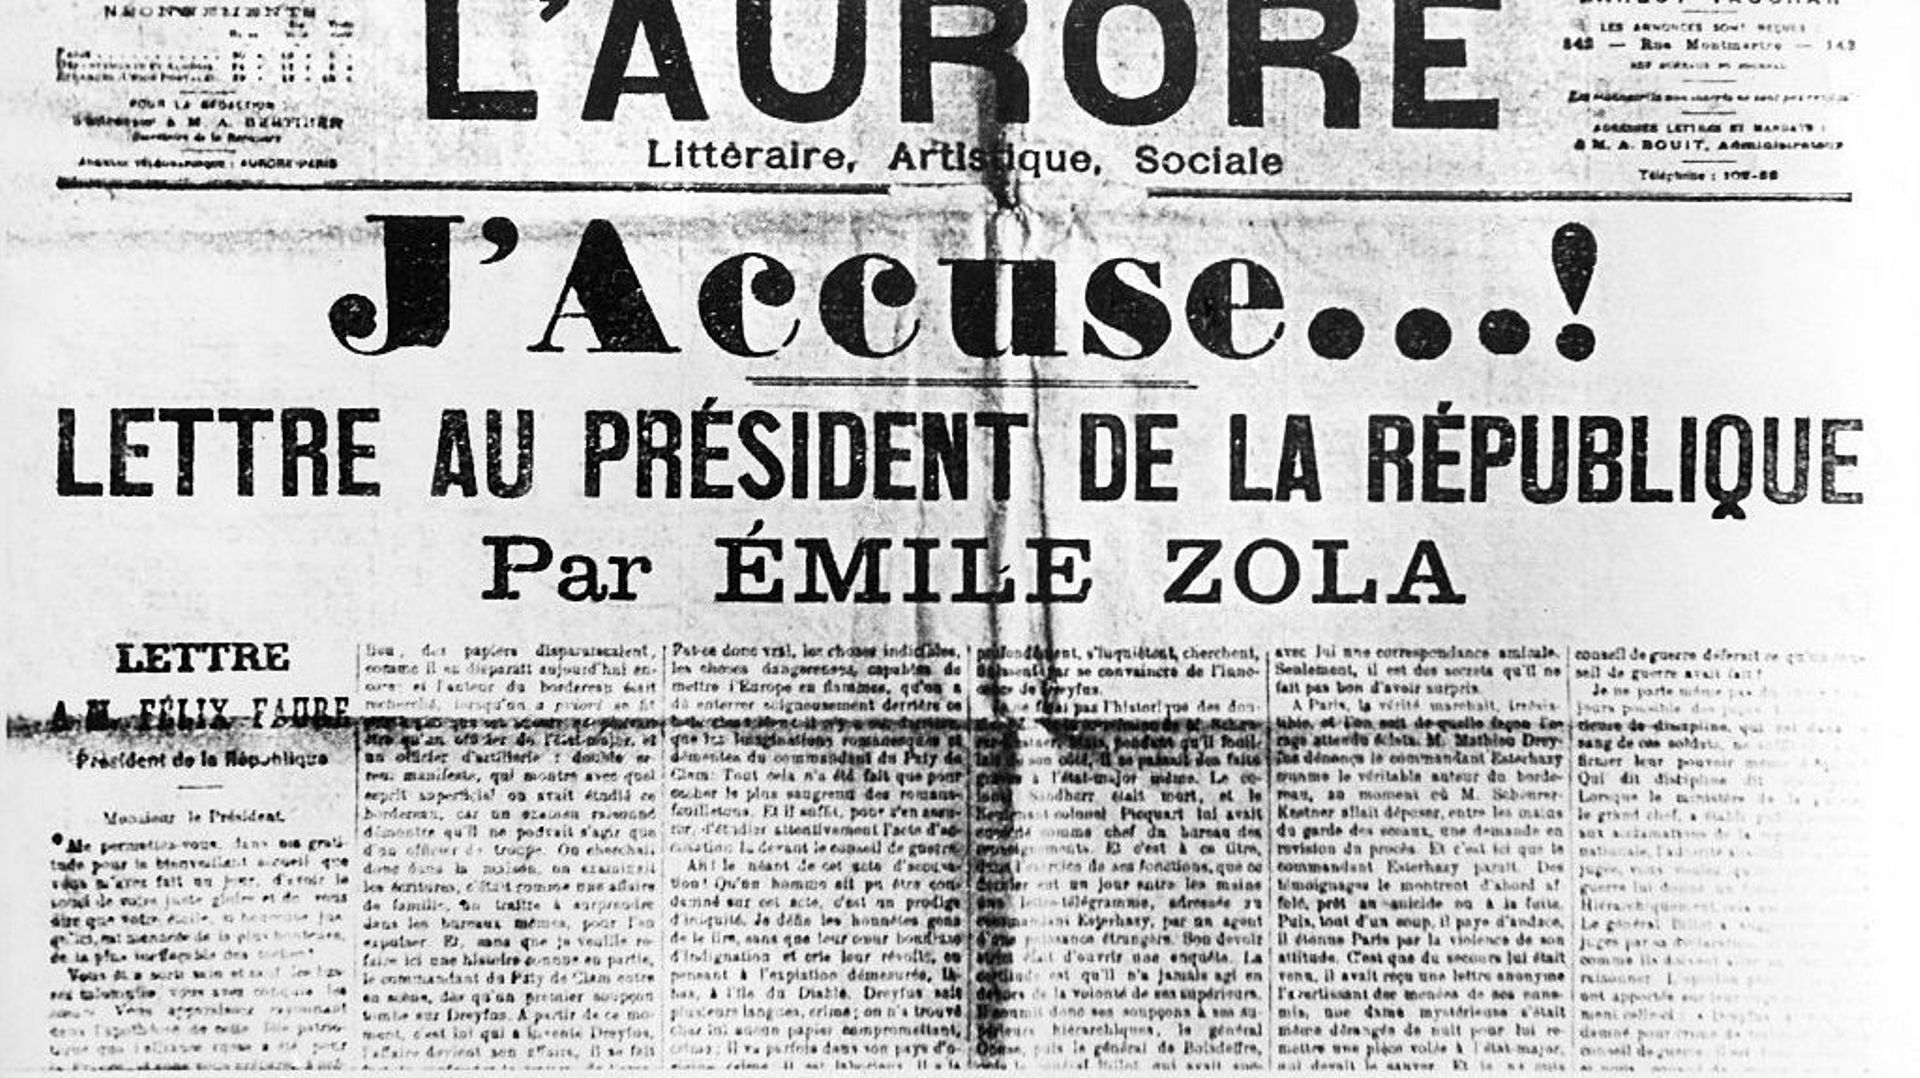 La lettre au président de la République d’Emile Zola, publiée dans L’Aurore, le 13 janvier 1899.